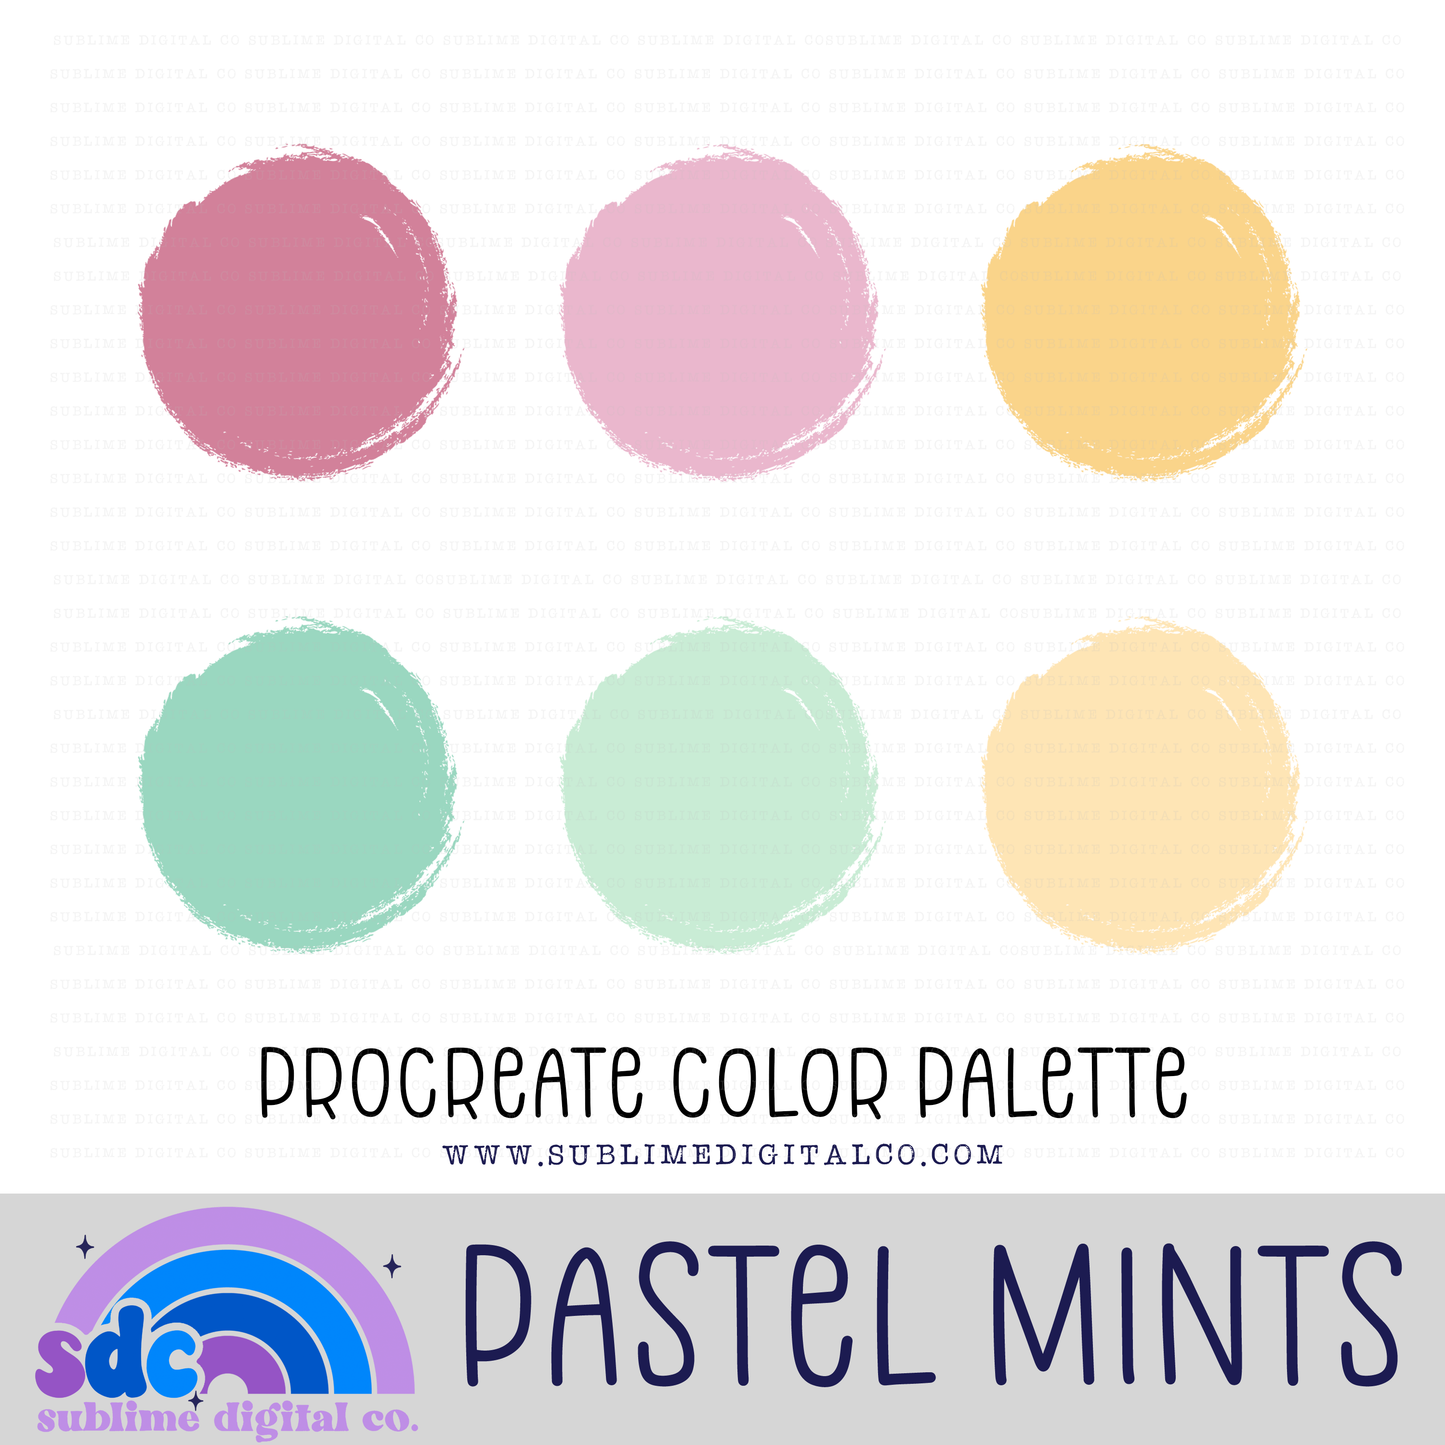 Procreate Color Palettes Drive